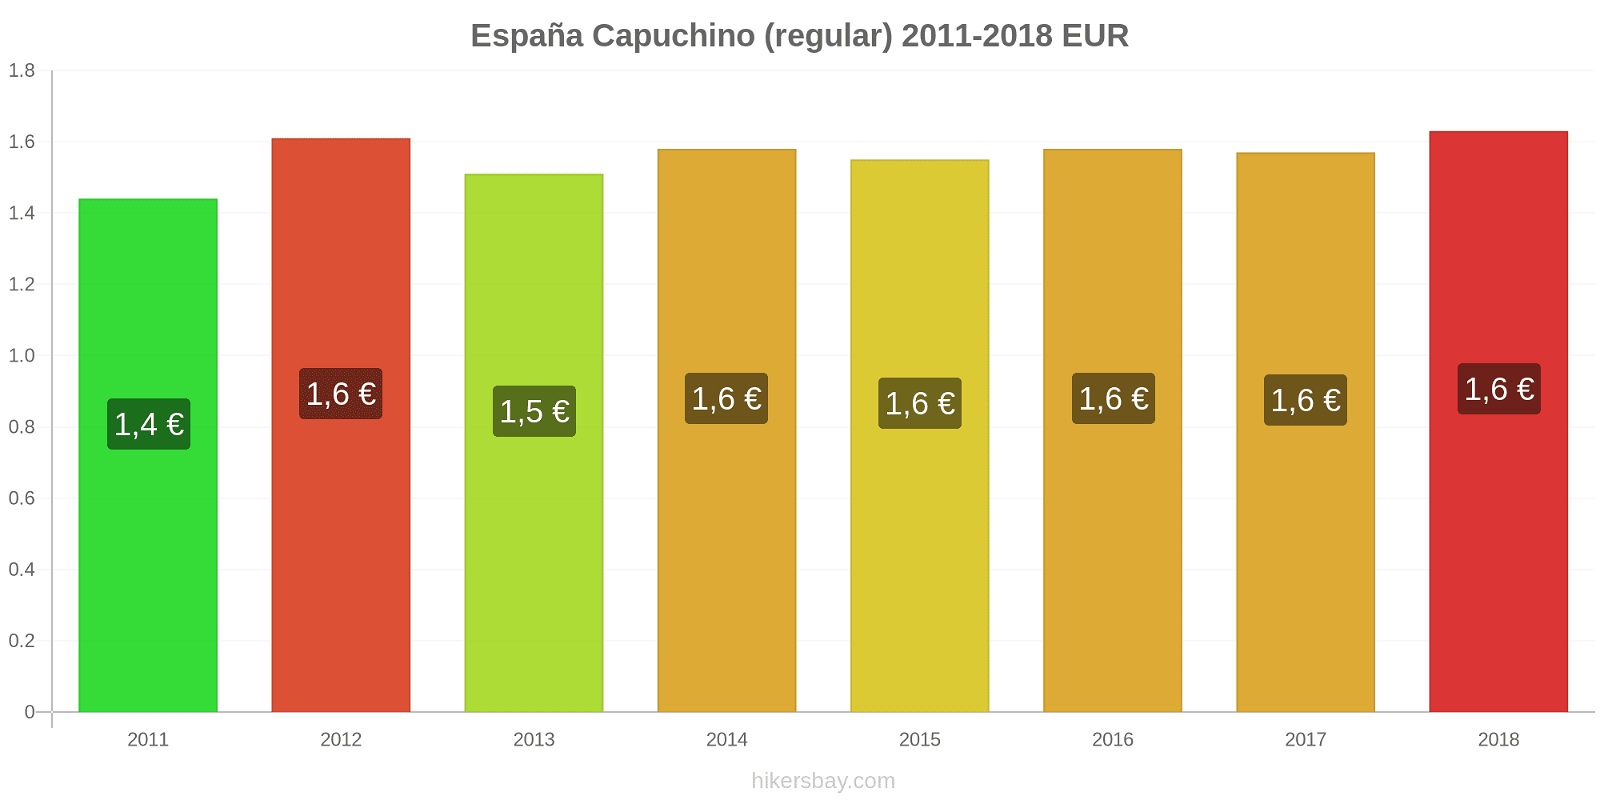 España cambios de precios Cappuccino hikersbay.com